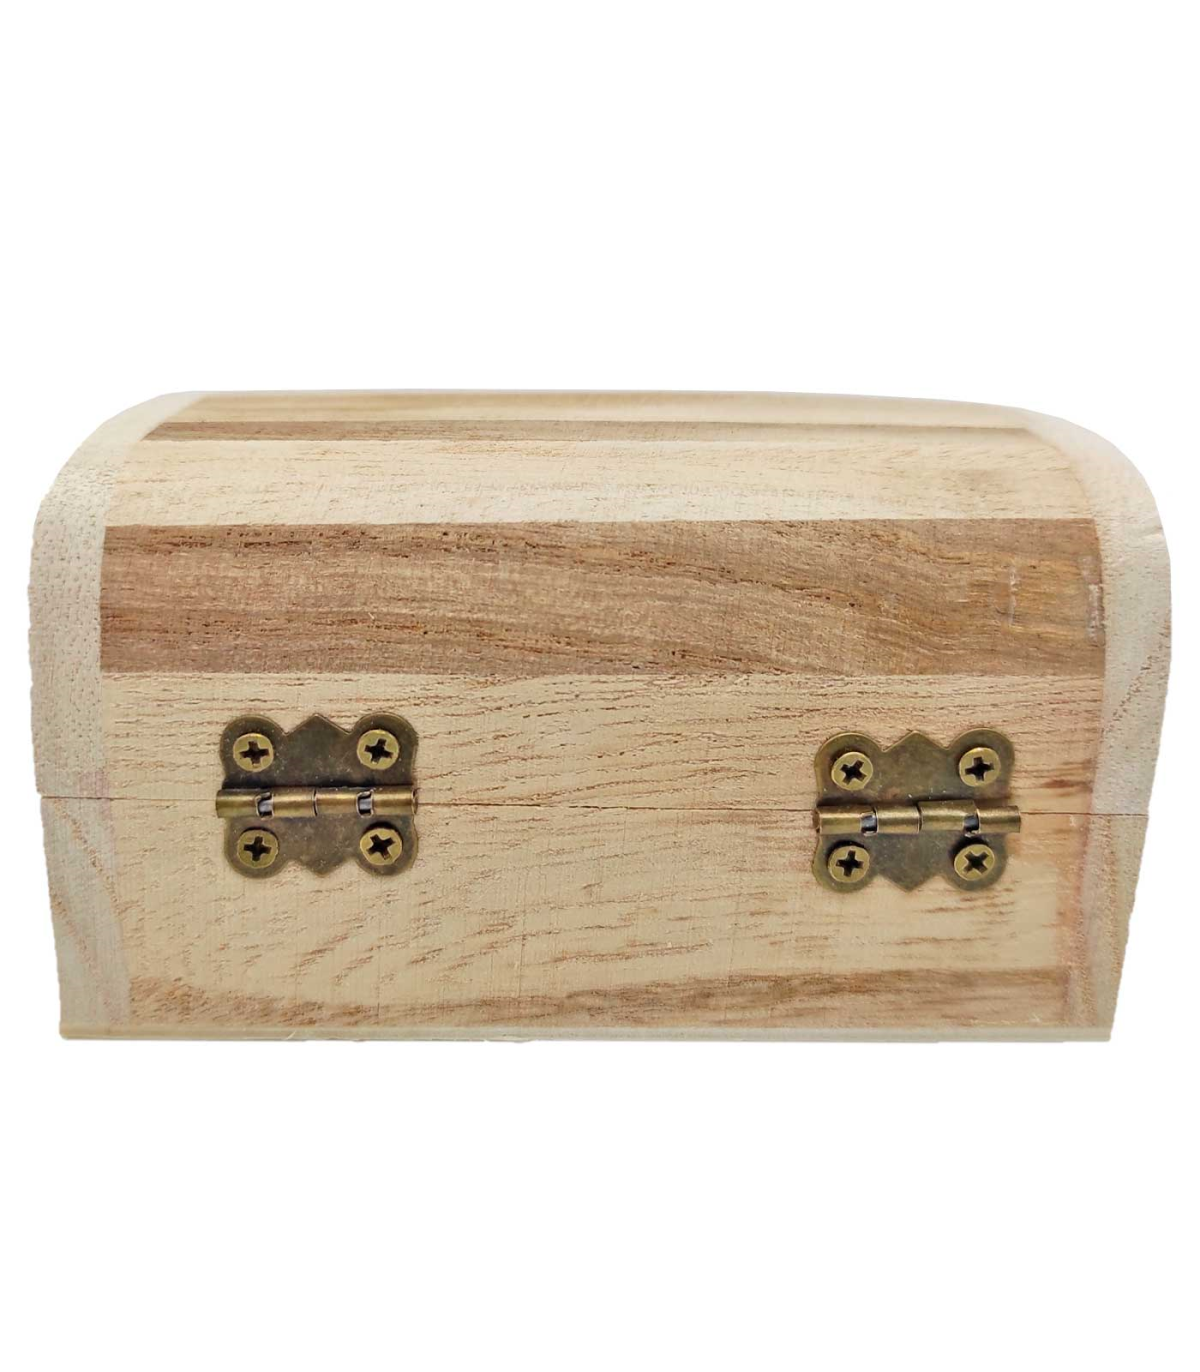 Caja de madera natural con cierre metálico, cofre sin tratar para